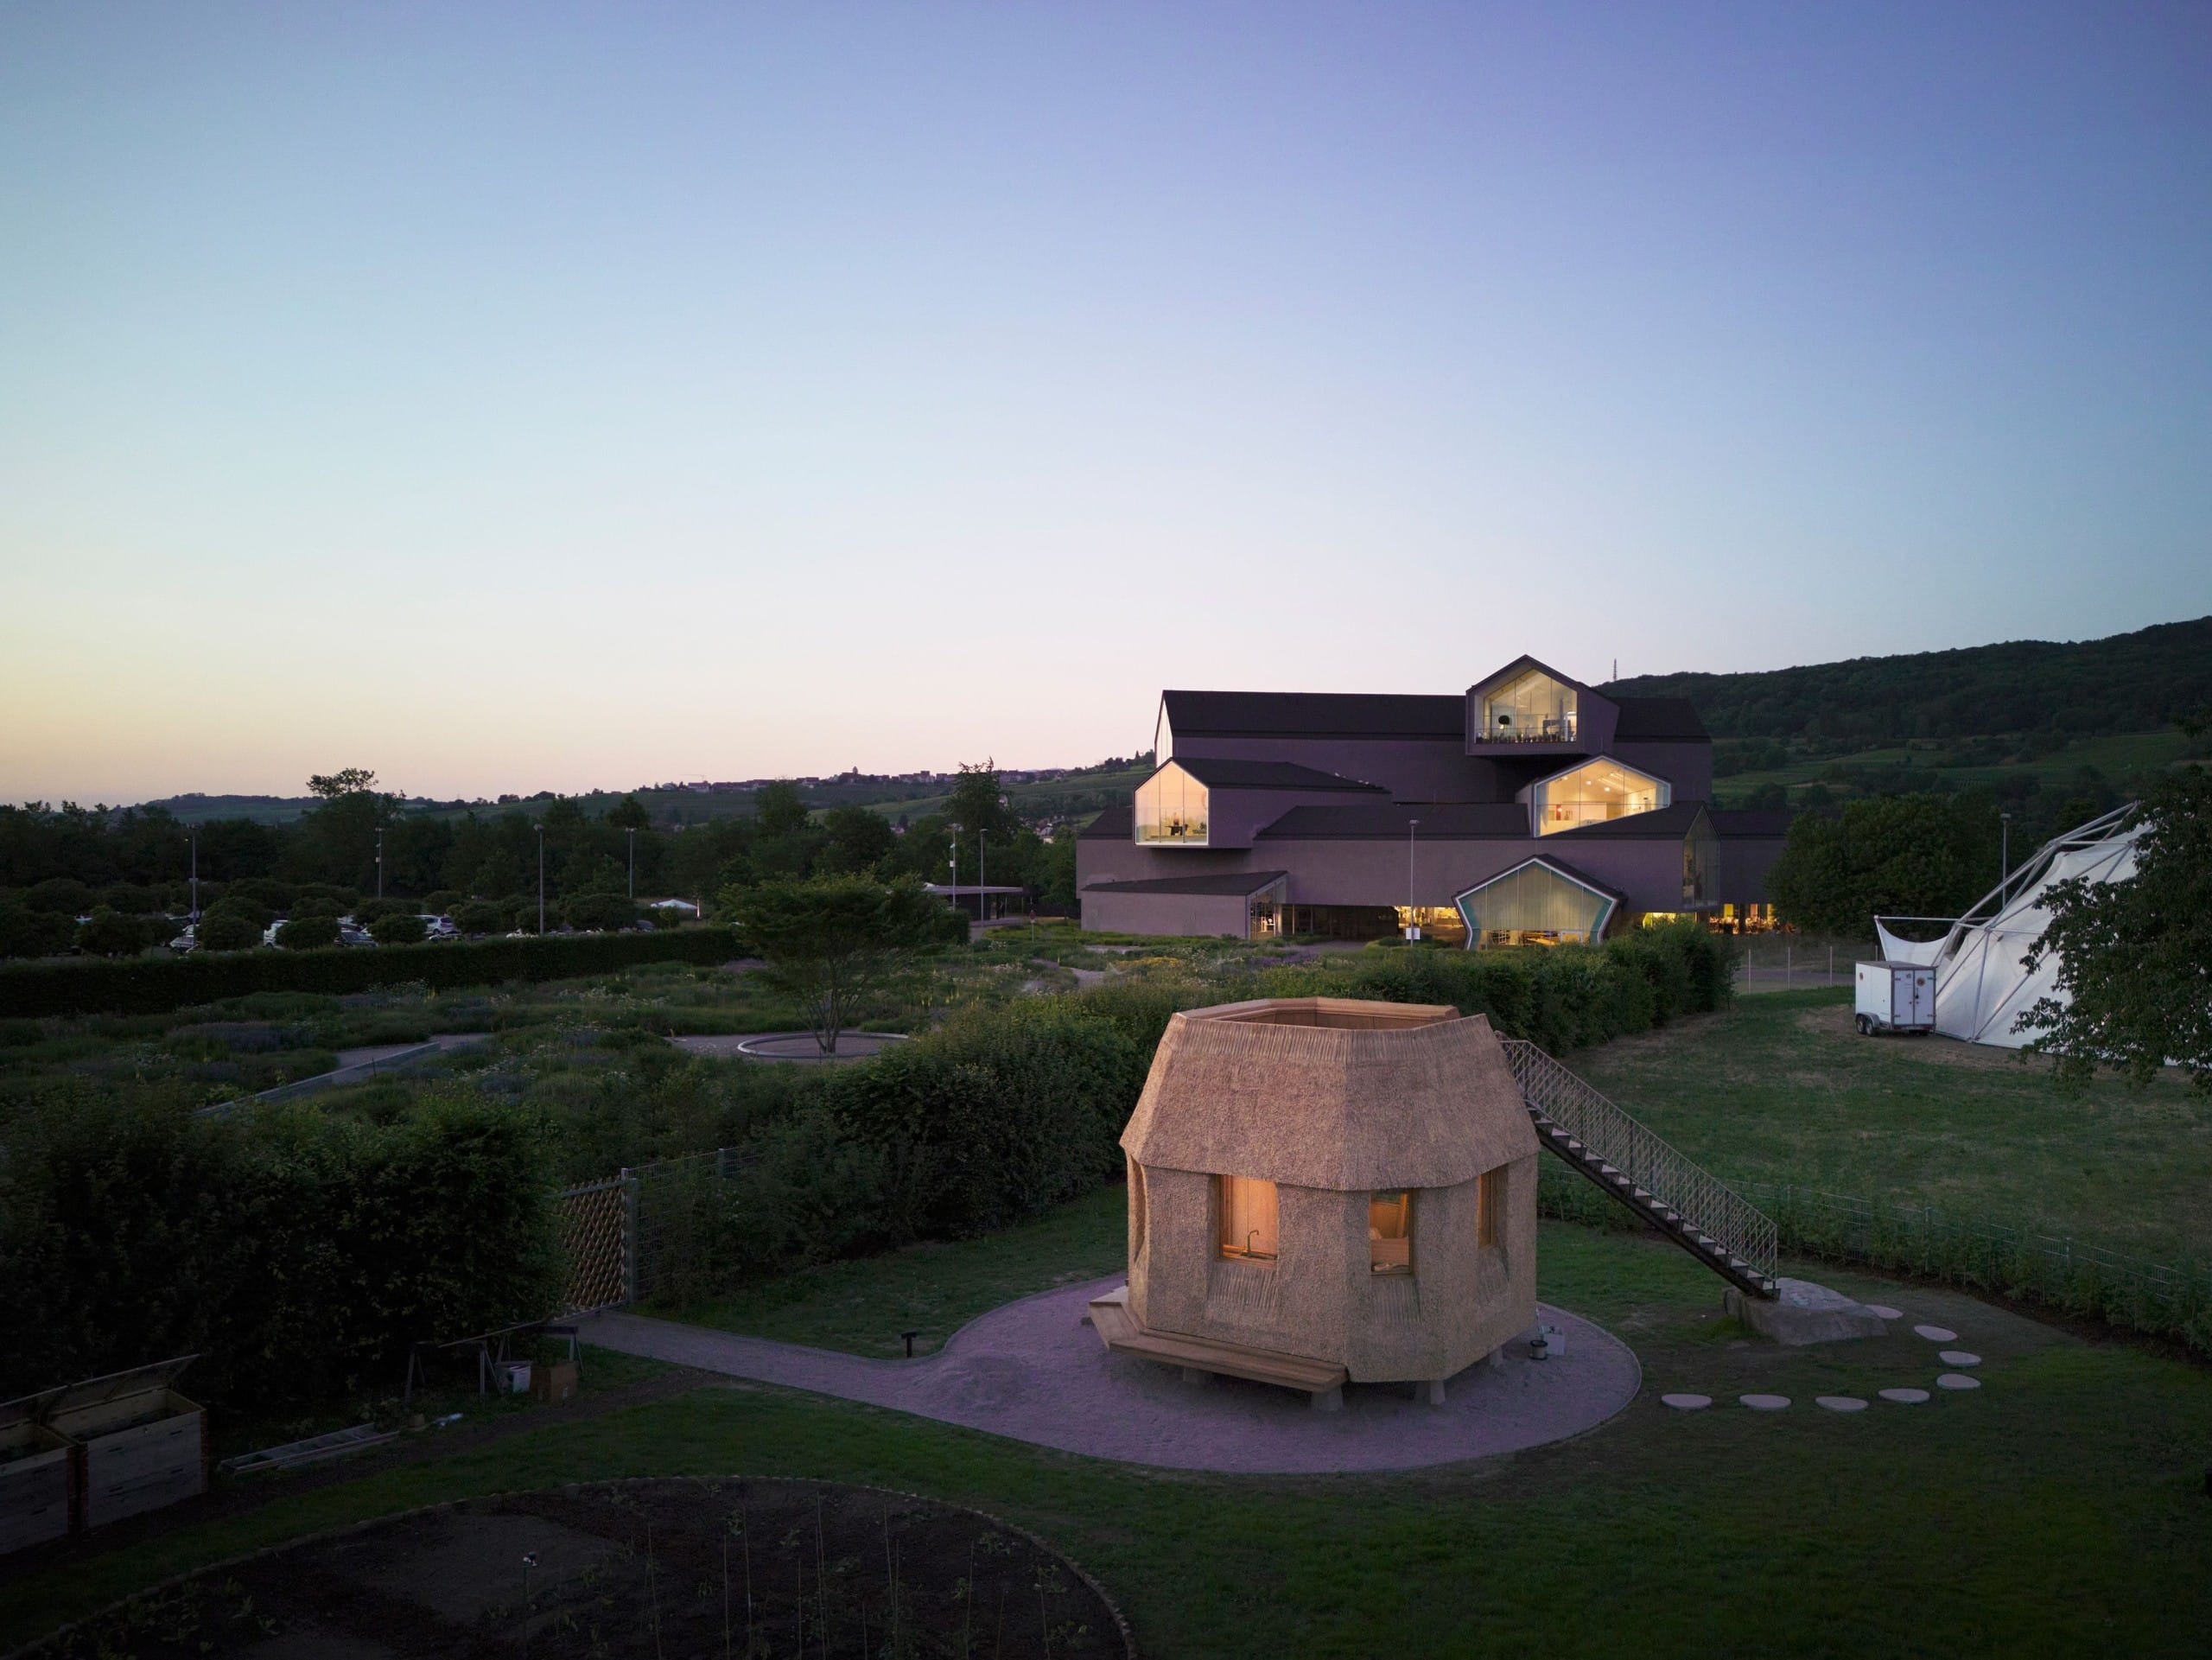 Die Ausstellung "Tsuyoshi Tane: The Garden House" erklärt den Aufbau und die Entstehungsgeschichte des besonderen Bauwerks auf dem Vitra Campus. © Vitra / ATTA, Foto: Julien Lanoo